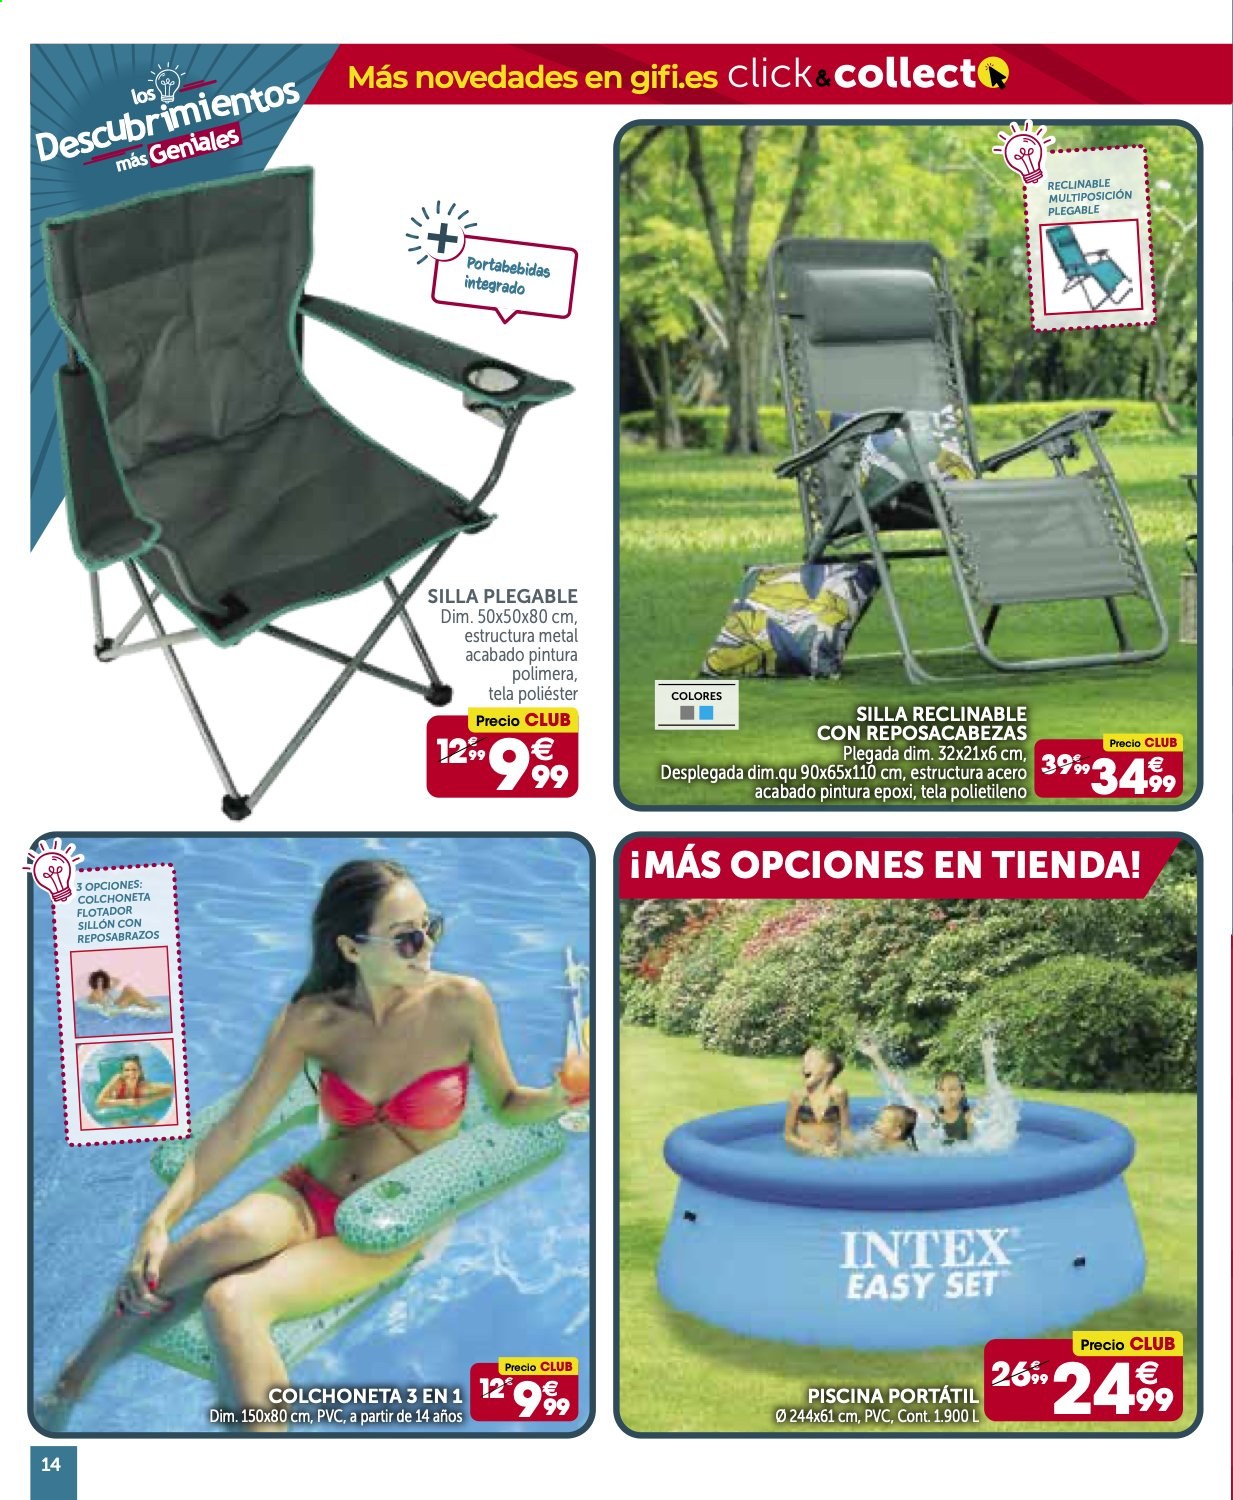 thumbnail - Folleto actual Gifi - 27/04/21 - 10/05/21 - Ventas - silla, silla plegable, sillón, silla reclinable, colchoneta, piscina, pileta, alberca. Página 14.